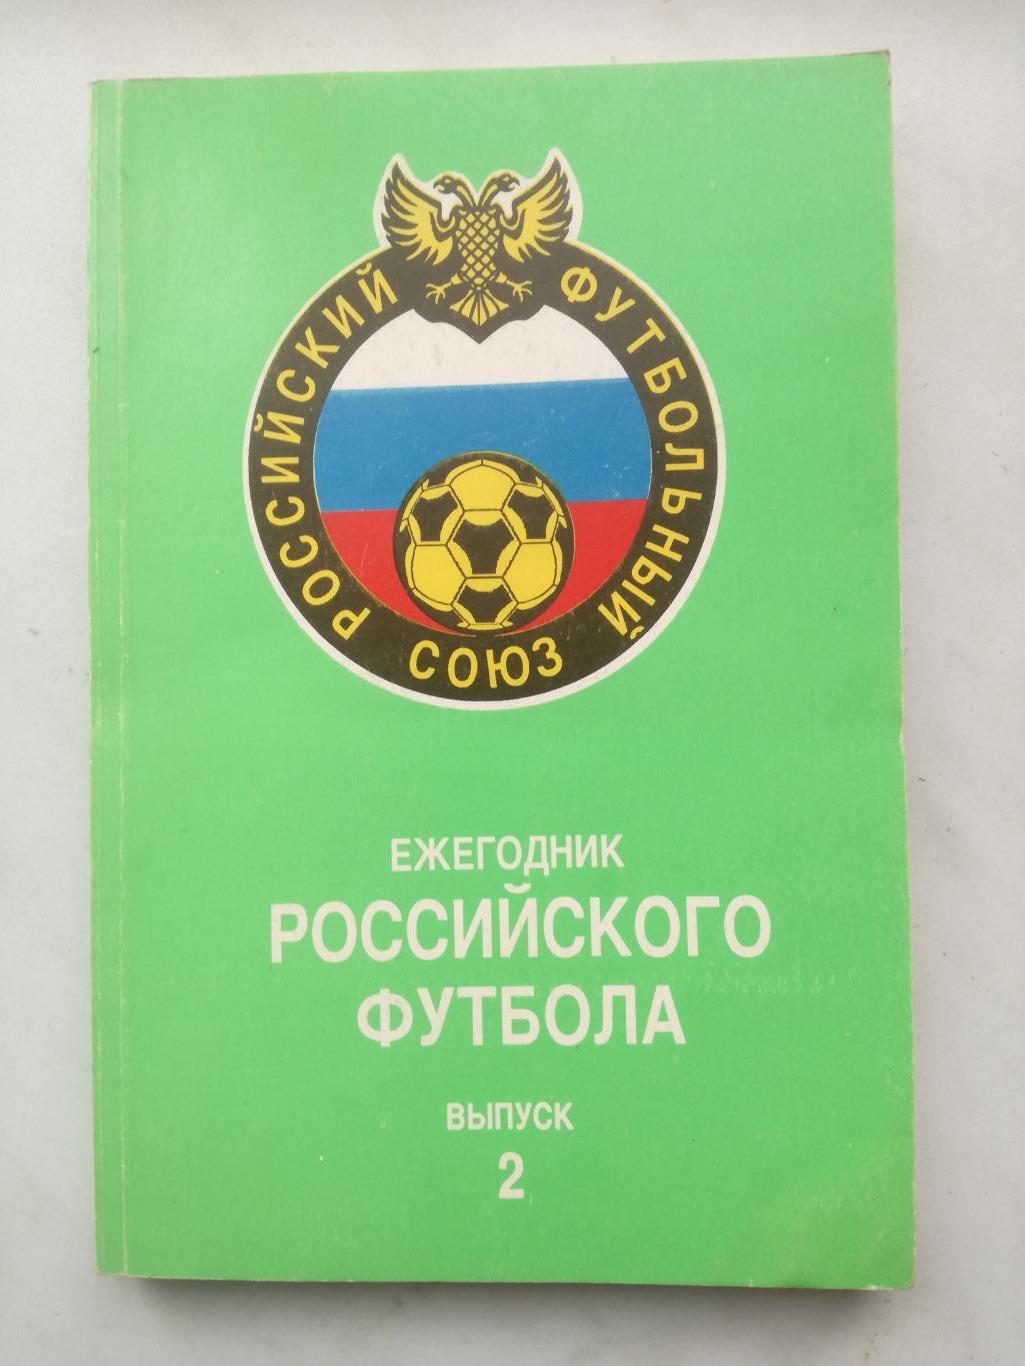 Ежегодник Российского футбола №3. Итоги 1994 (издание 1995)